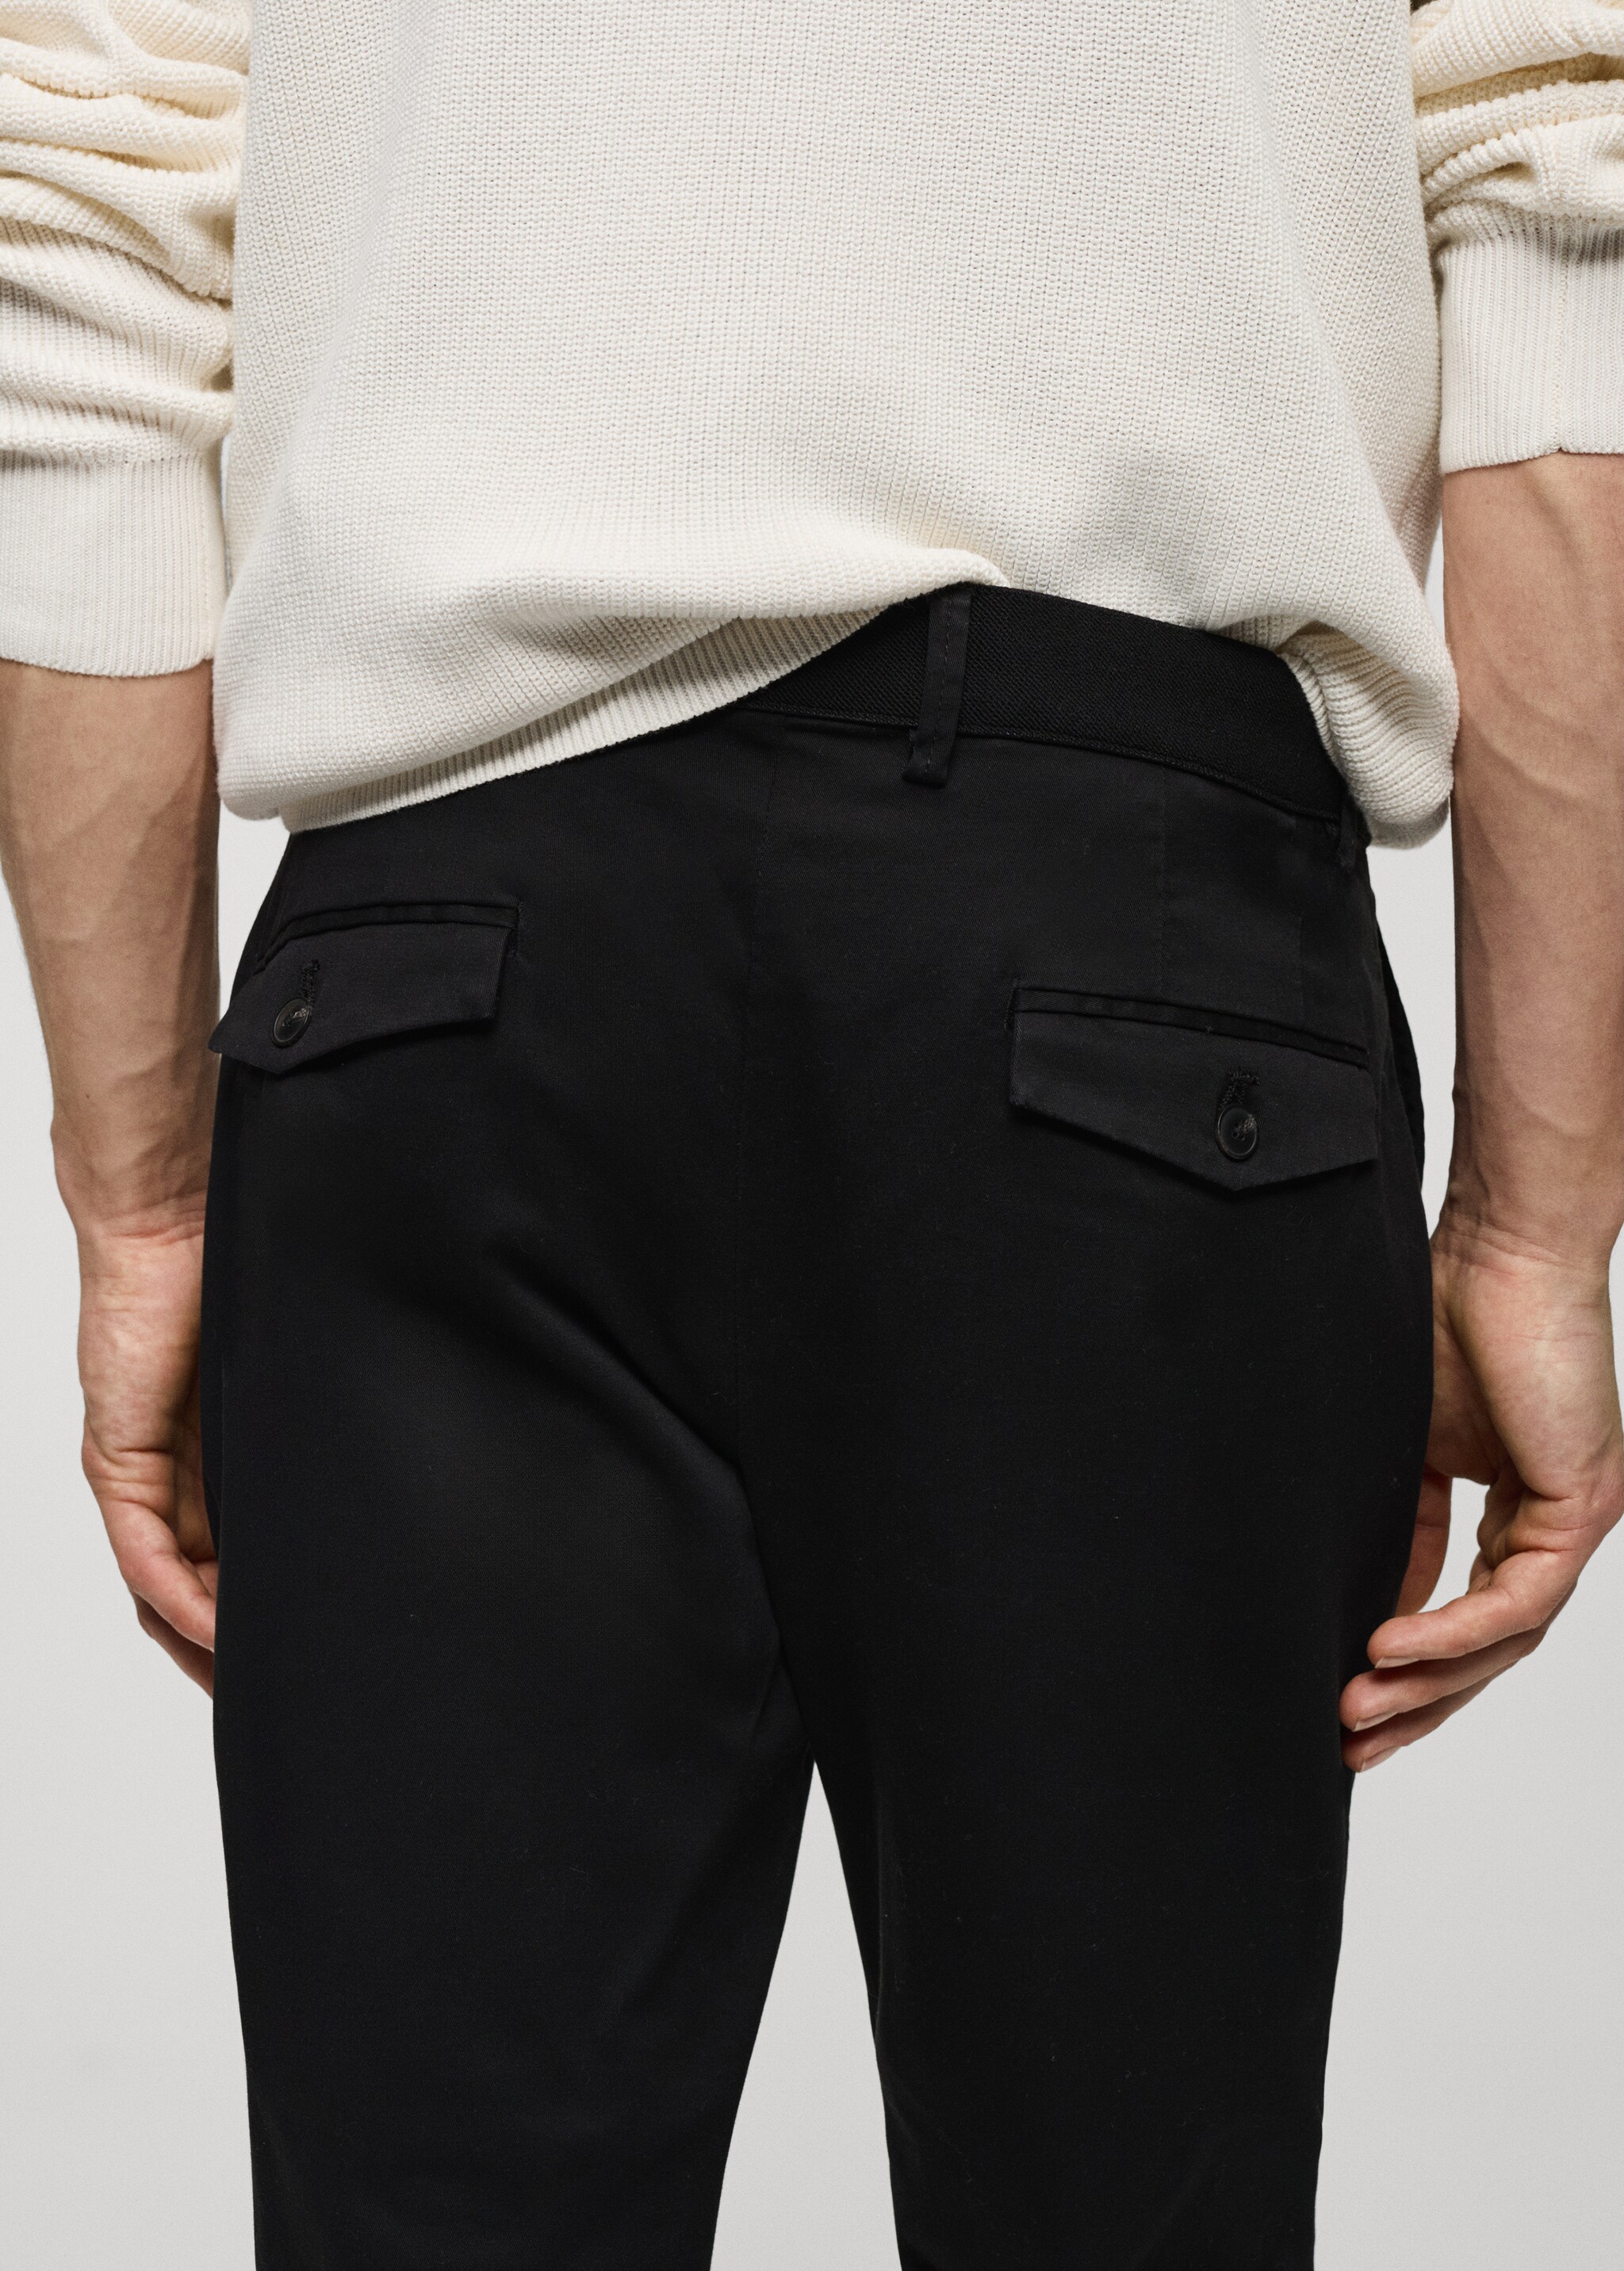 Pantaloni cotone tapered crop - Dettaglio dell'articolo 4